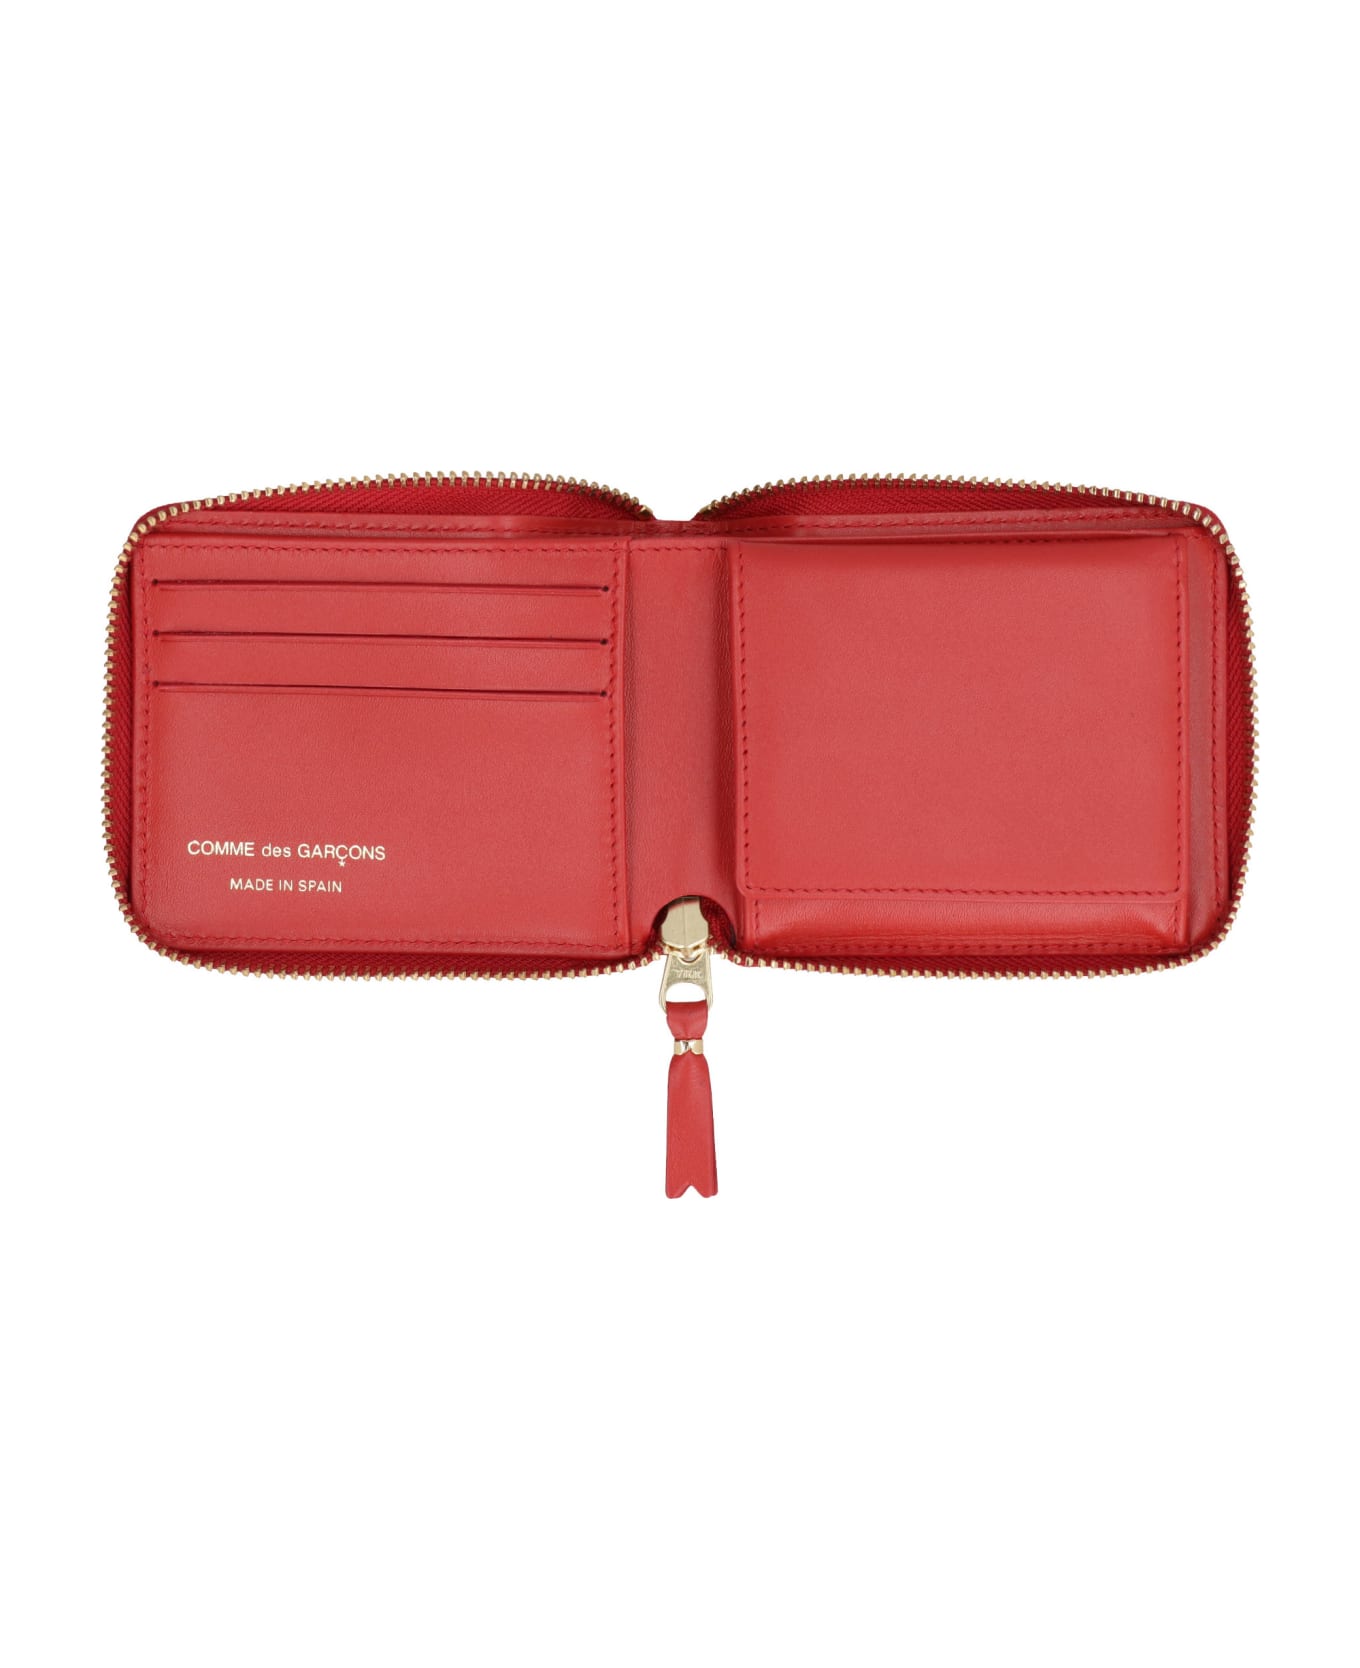 Comme des Garçons Wallet Mini Leather Wallet - Red